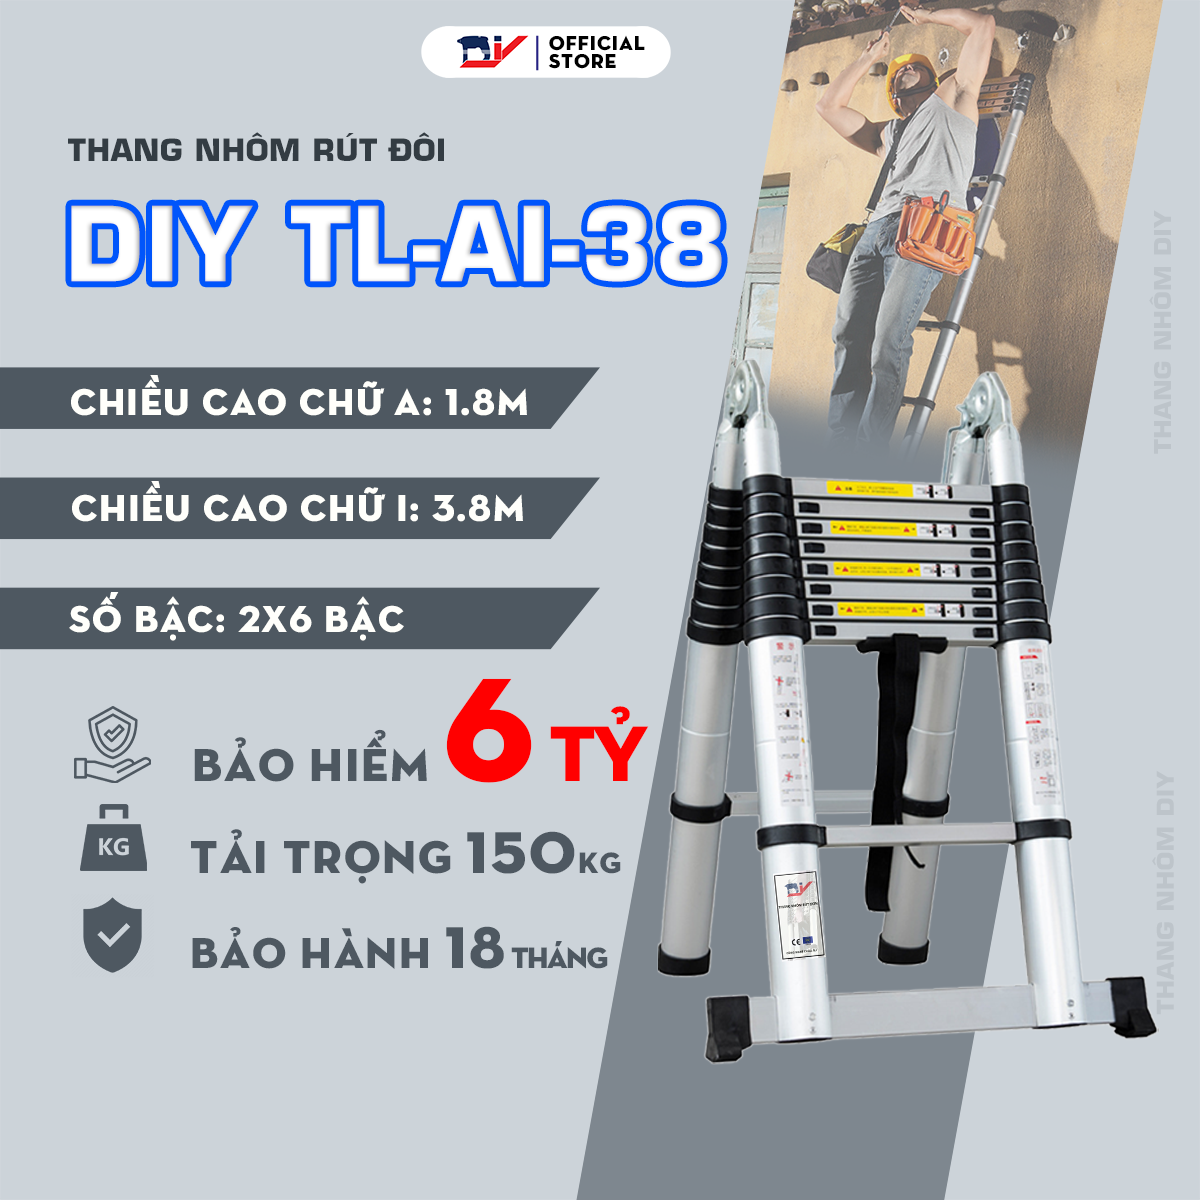 Thang nhôm rút đôi DIY TL-AI-38 hàng chính hãng - Tiêu chuẩn EN131